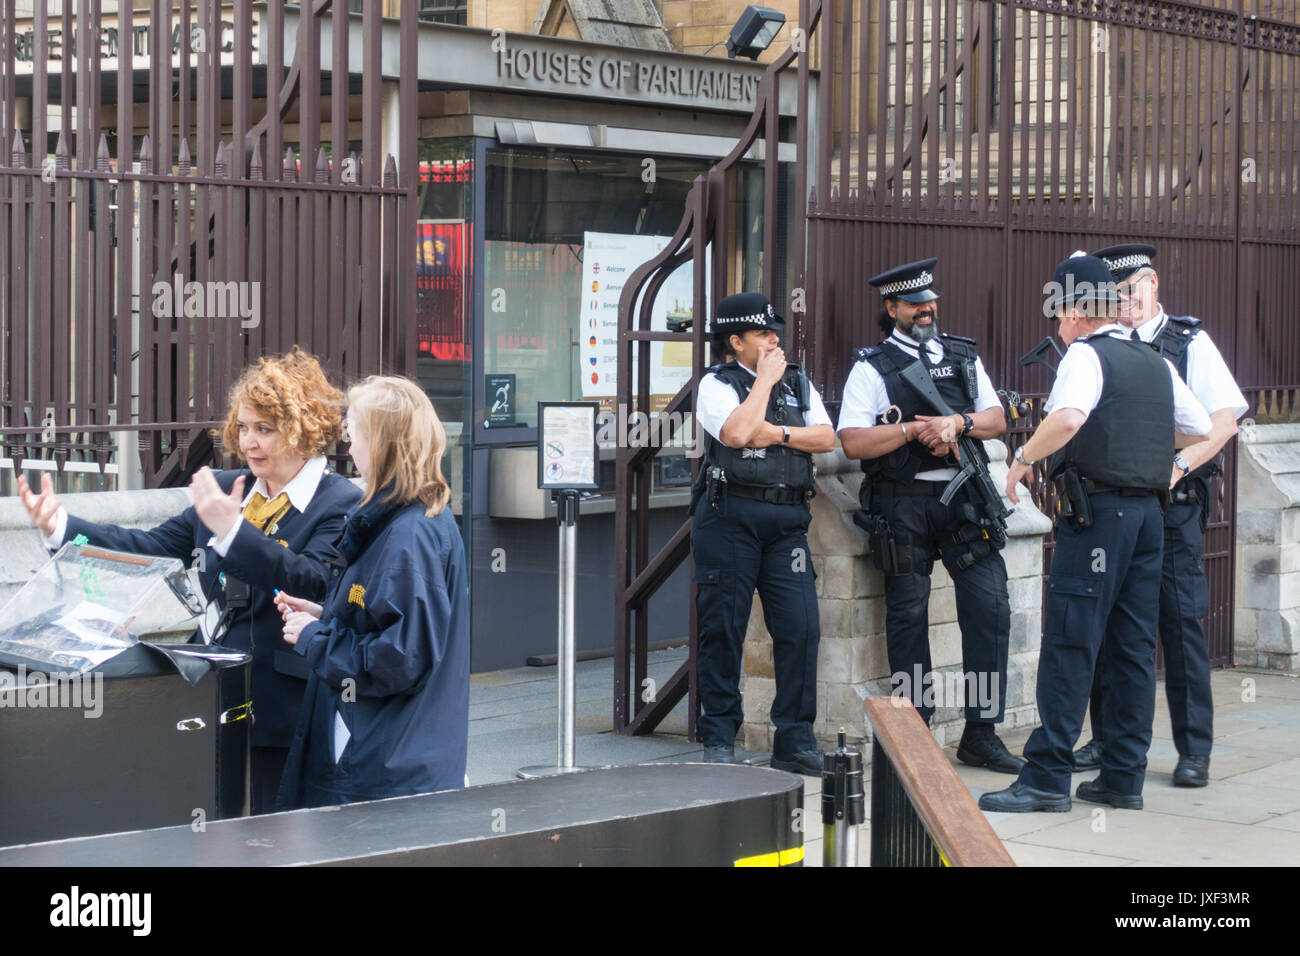 Des policiers armés devant les Maisons du Parlement, Londres, Angleterre Banque D'Images